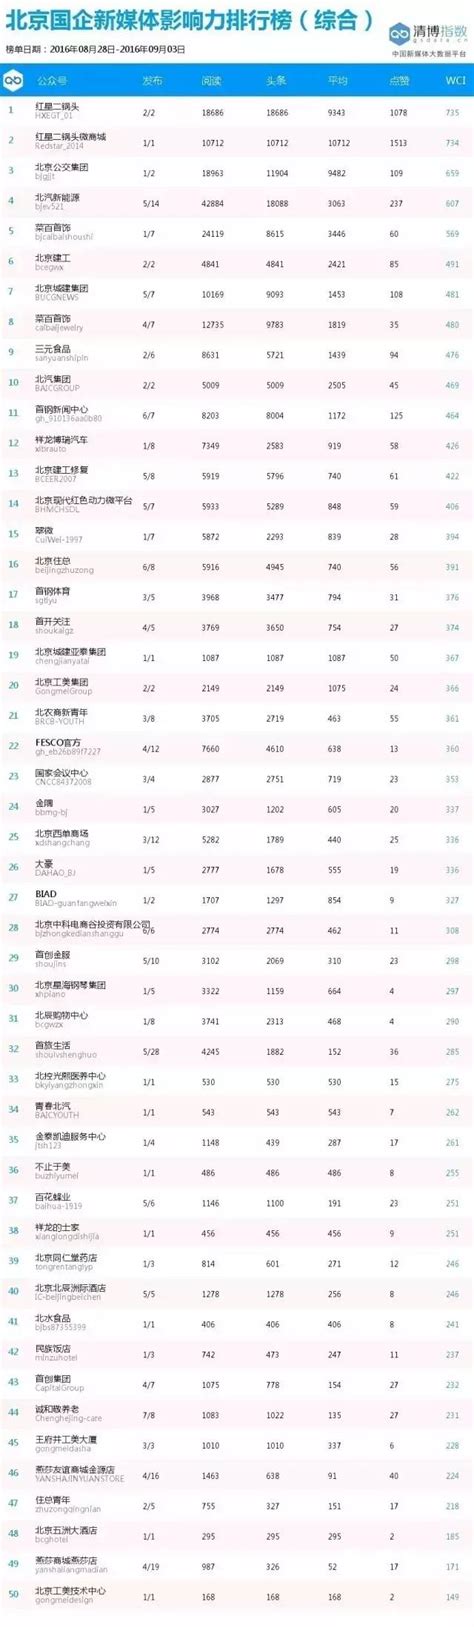 北京国企新媒体影响力排行榜周榜（第20期）